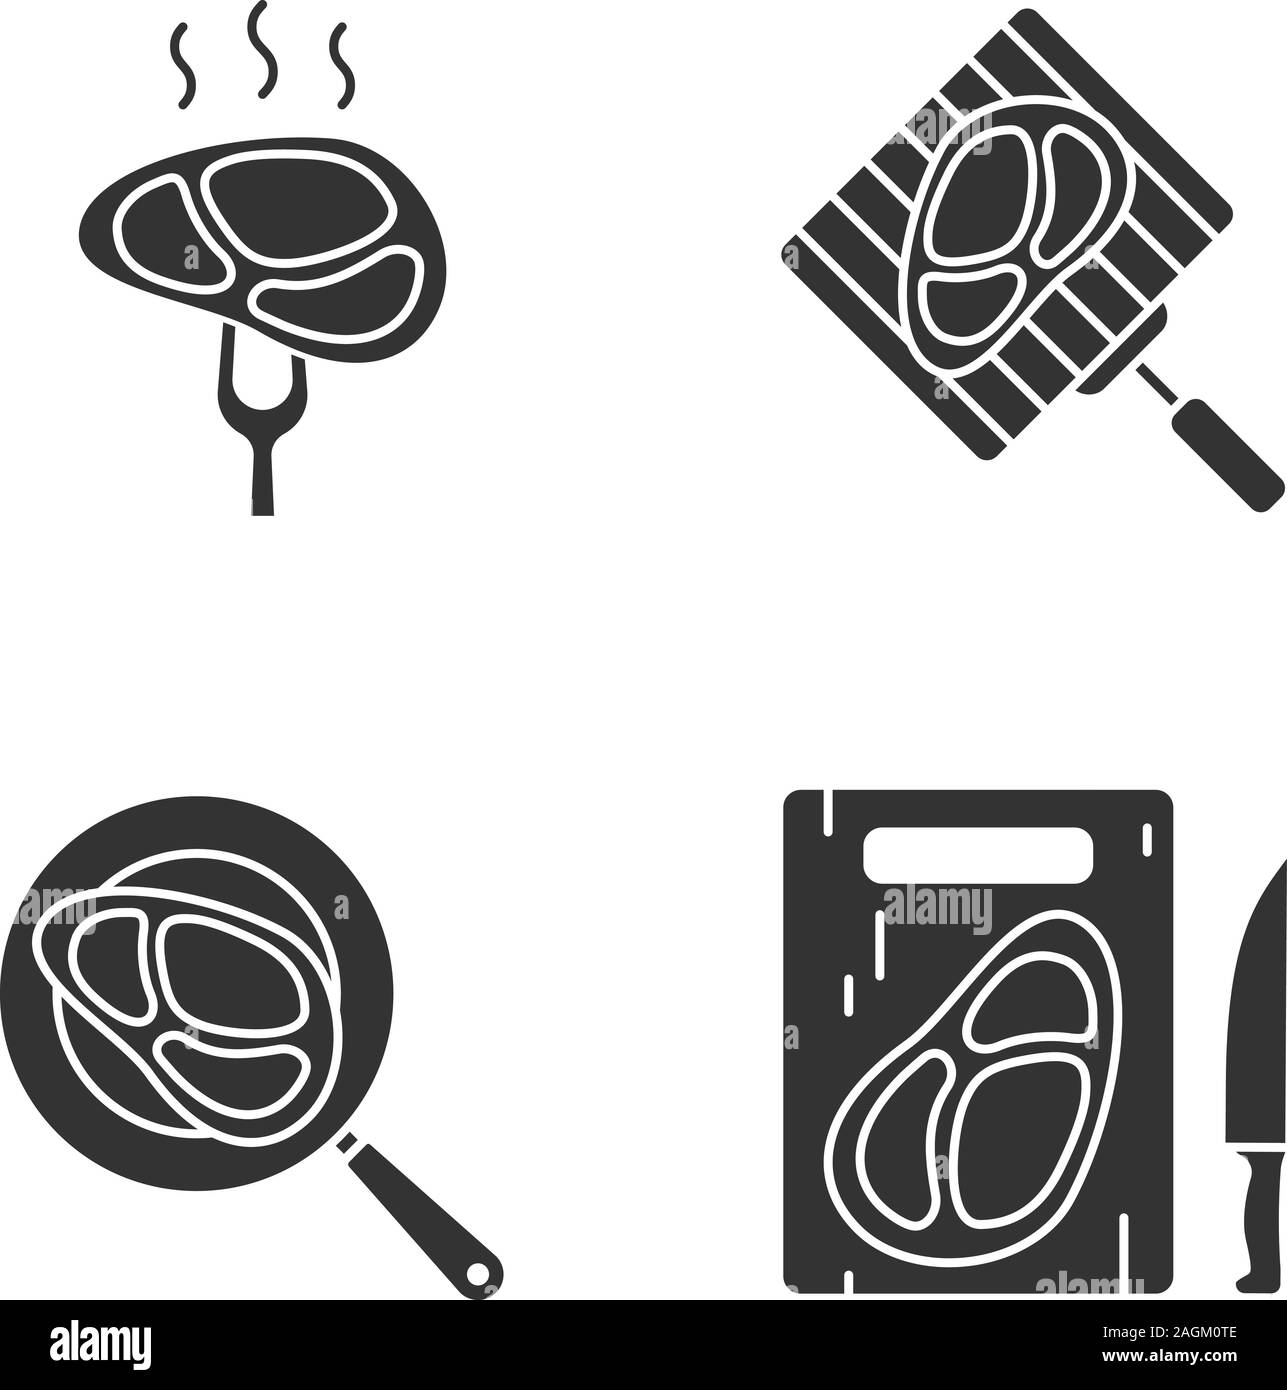 Préparation de la viande glyphe icons set. La cuisson, la friture et couper la viande de bœuf. Symboles de Silhouette. Vector illustration isolé Illustration de Vecteur